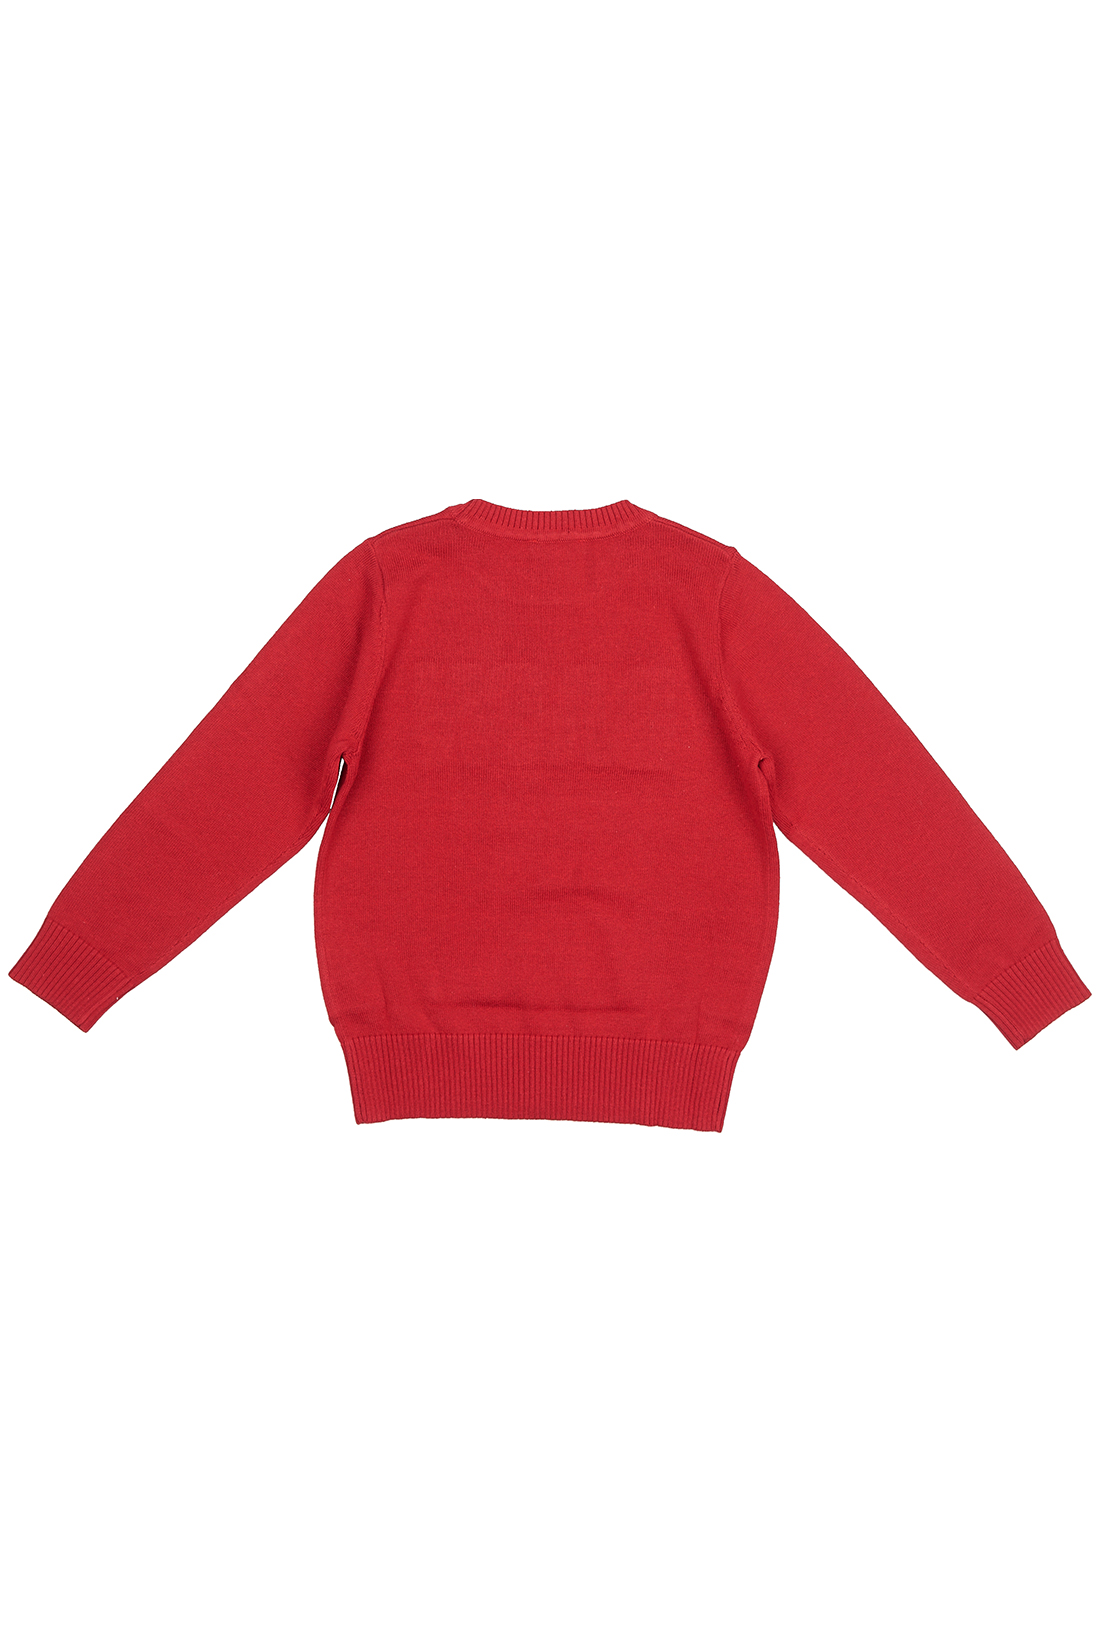 Джемпер для мальчика (арт. baon BK638502), размер 110-116, цвет красный Джемпер для мальчика (арт. baon BK638502) - фото 2